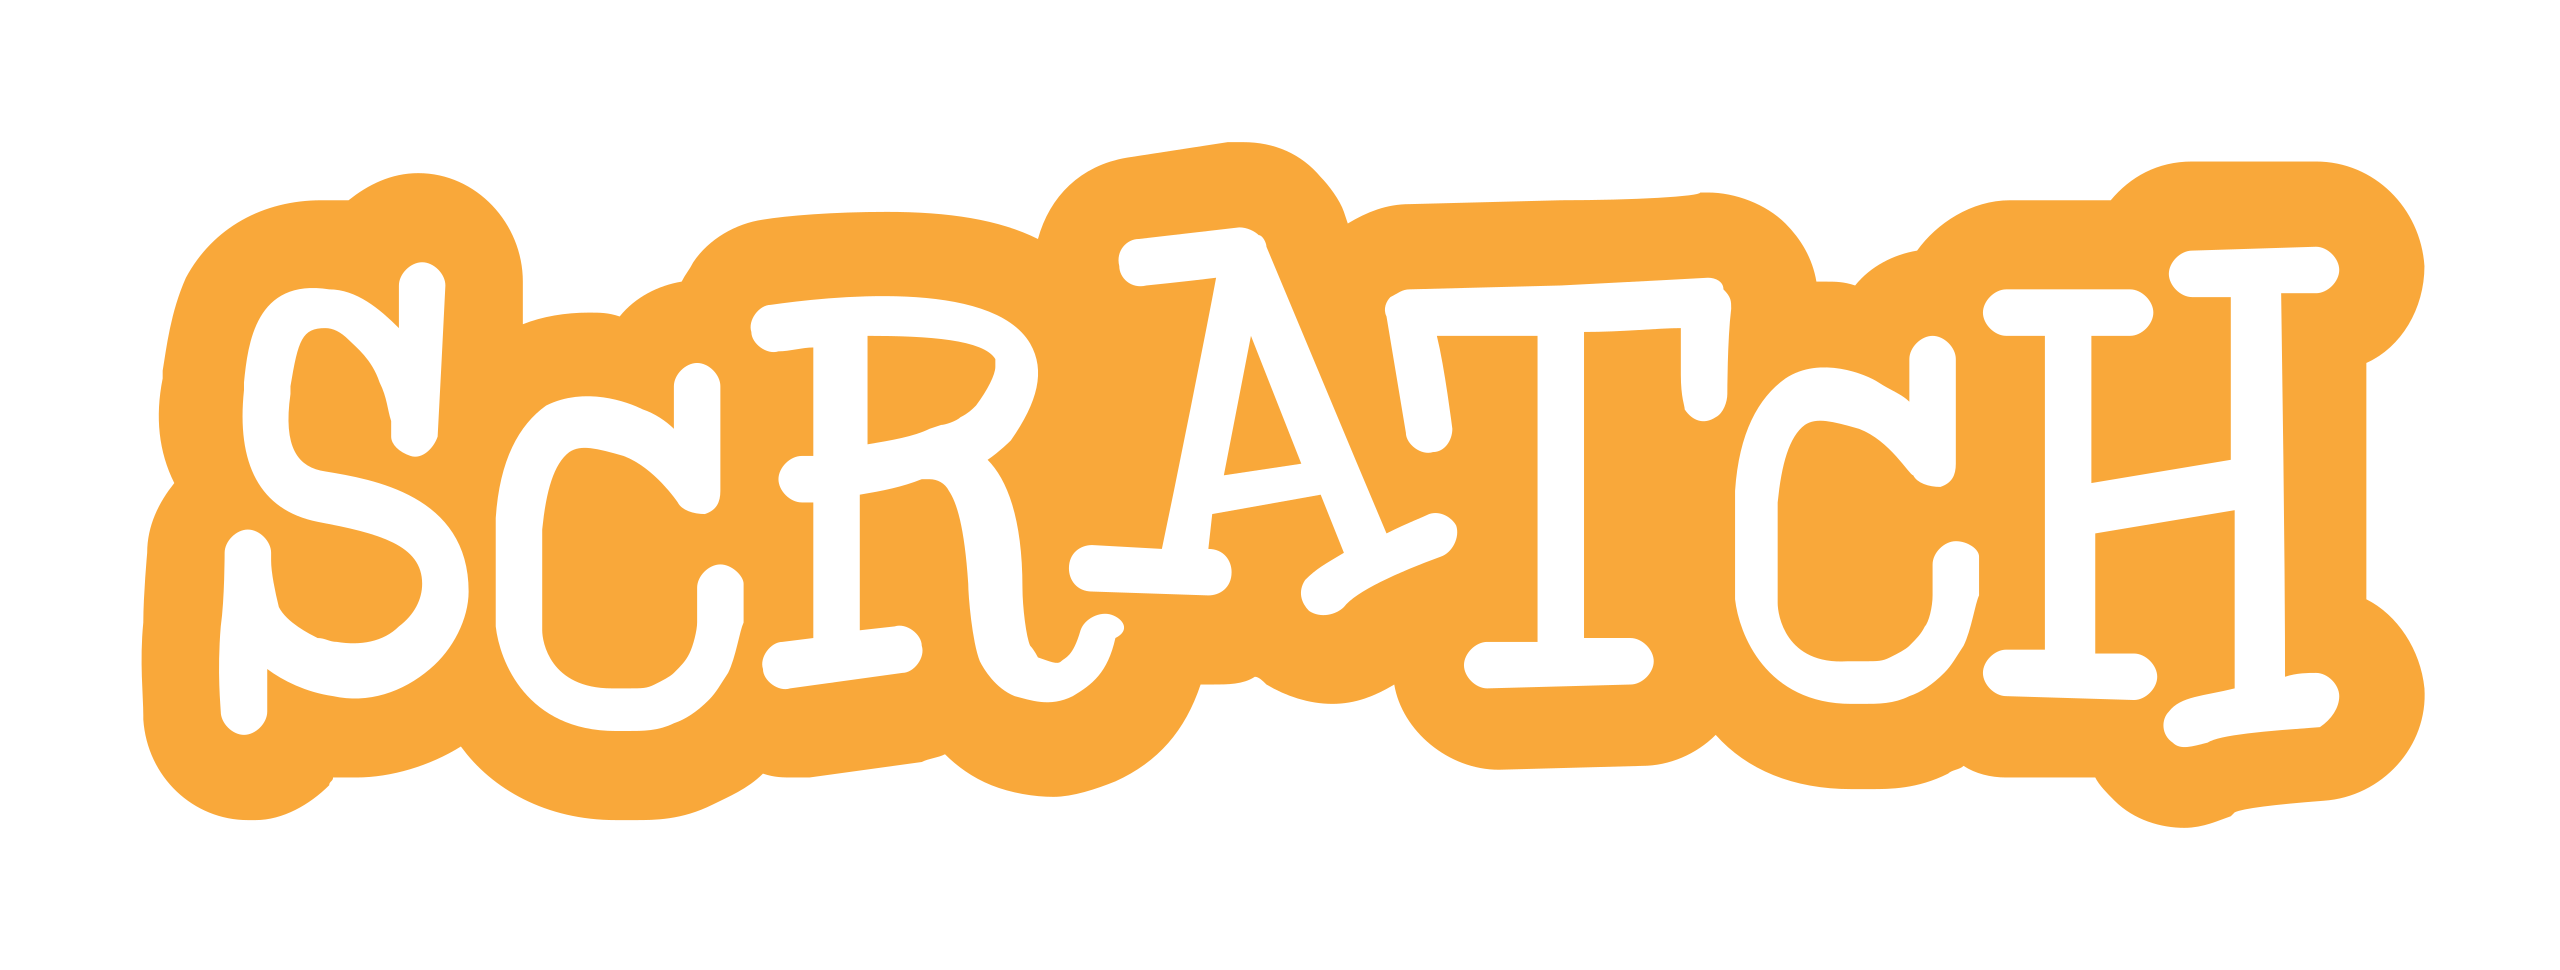 Logo Scratch